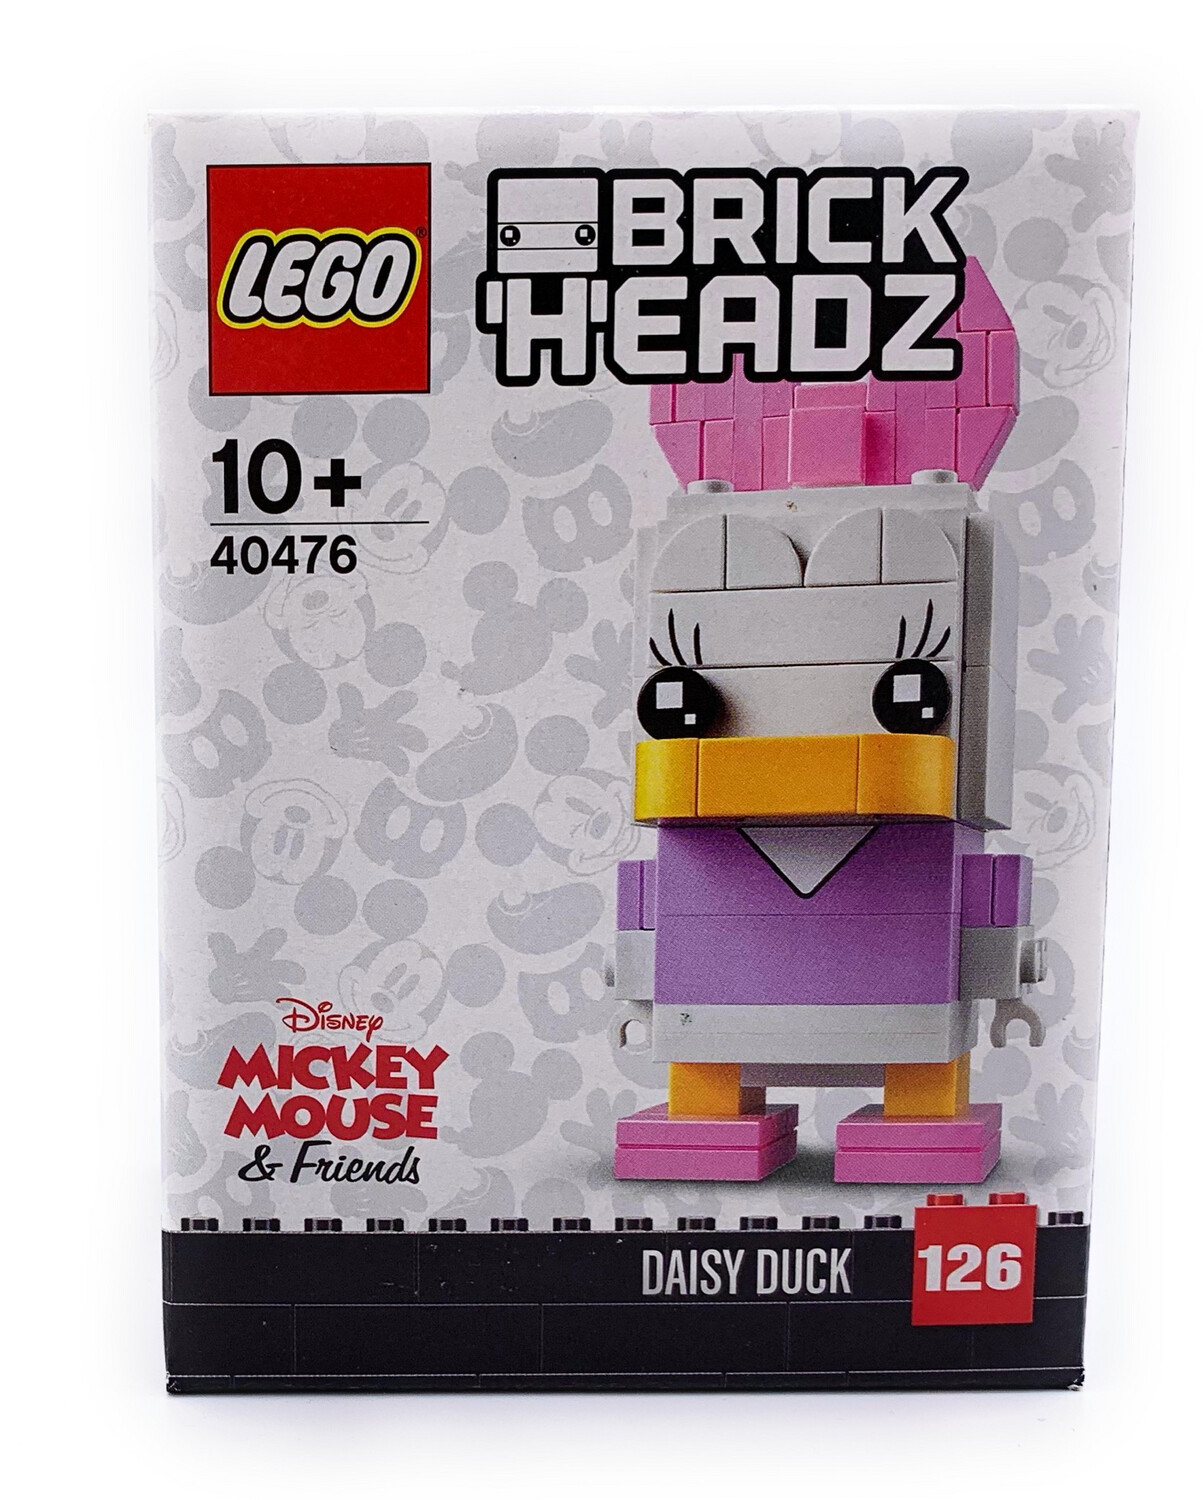 LEGO - Brick Headz Daisy Duck 40476